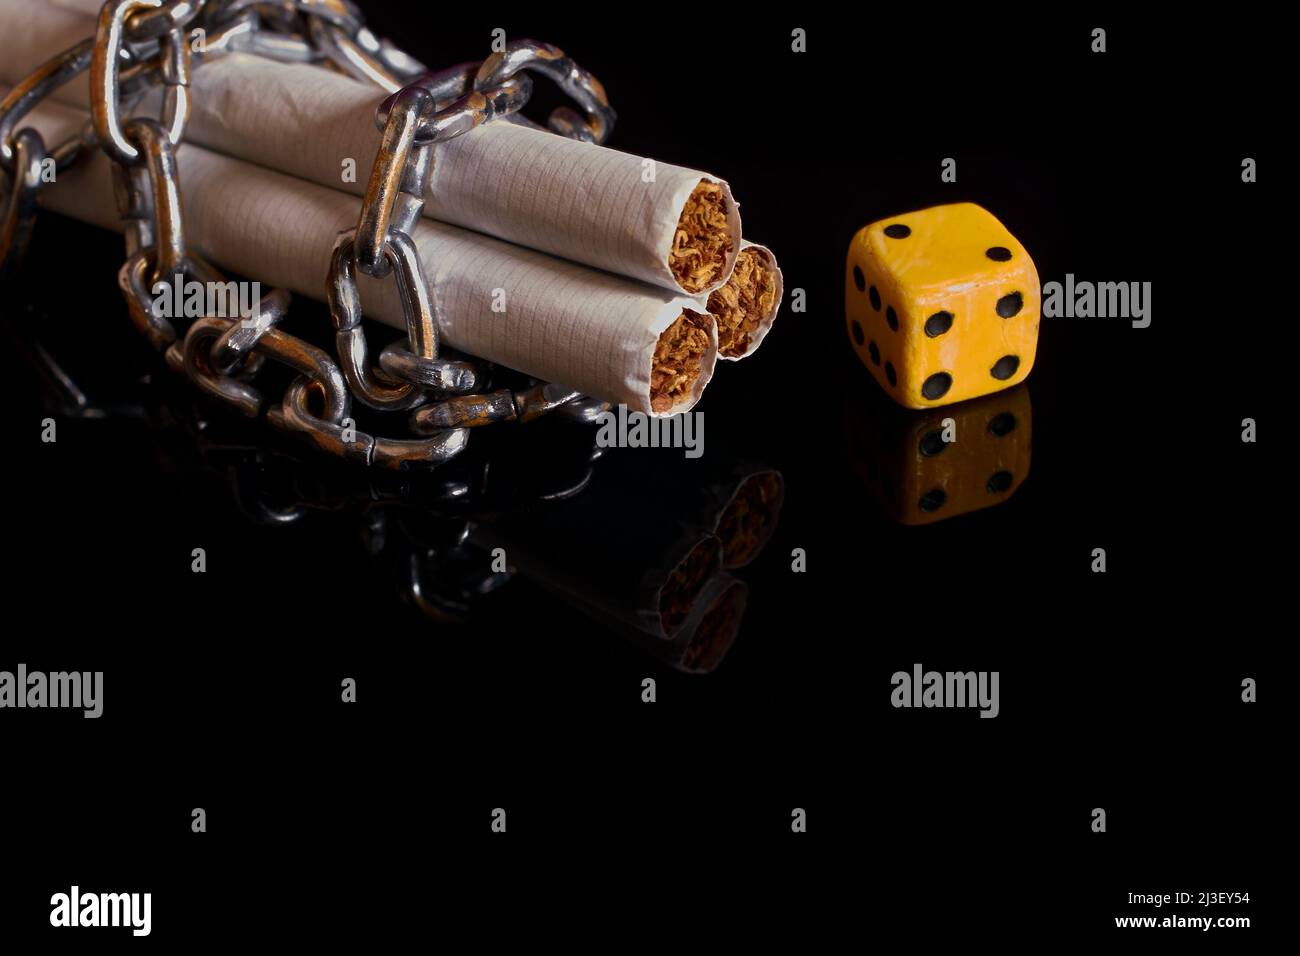 Nicotina e dipendenza da gioco d'azzardo. Sigarette, riavvolte da una catena e da un dado Foto Stock